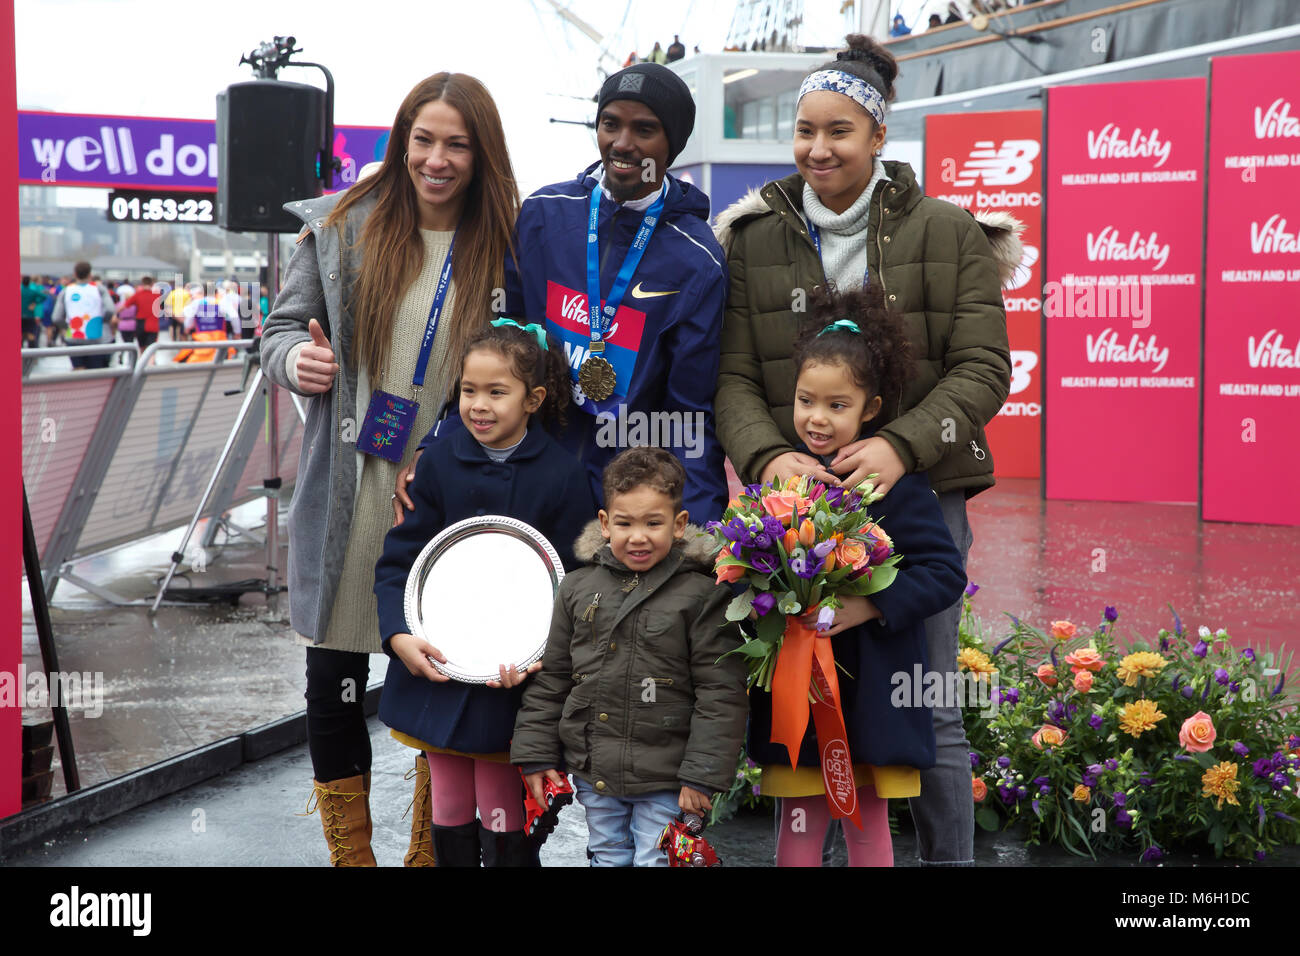 Greenwich, Royaume-Uni, 4 mars 2018,Mo Farah pose avec sa famille après avoir remporté la vitalité demi qui a terminé à Greenwich. Larby Keith crédit/ Alamy Live News Banque D'Images